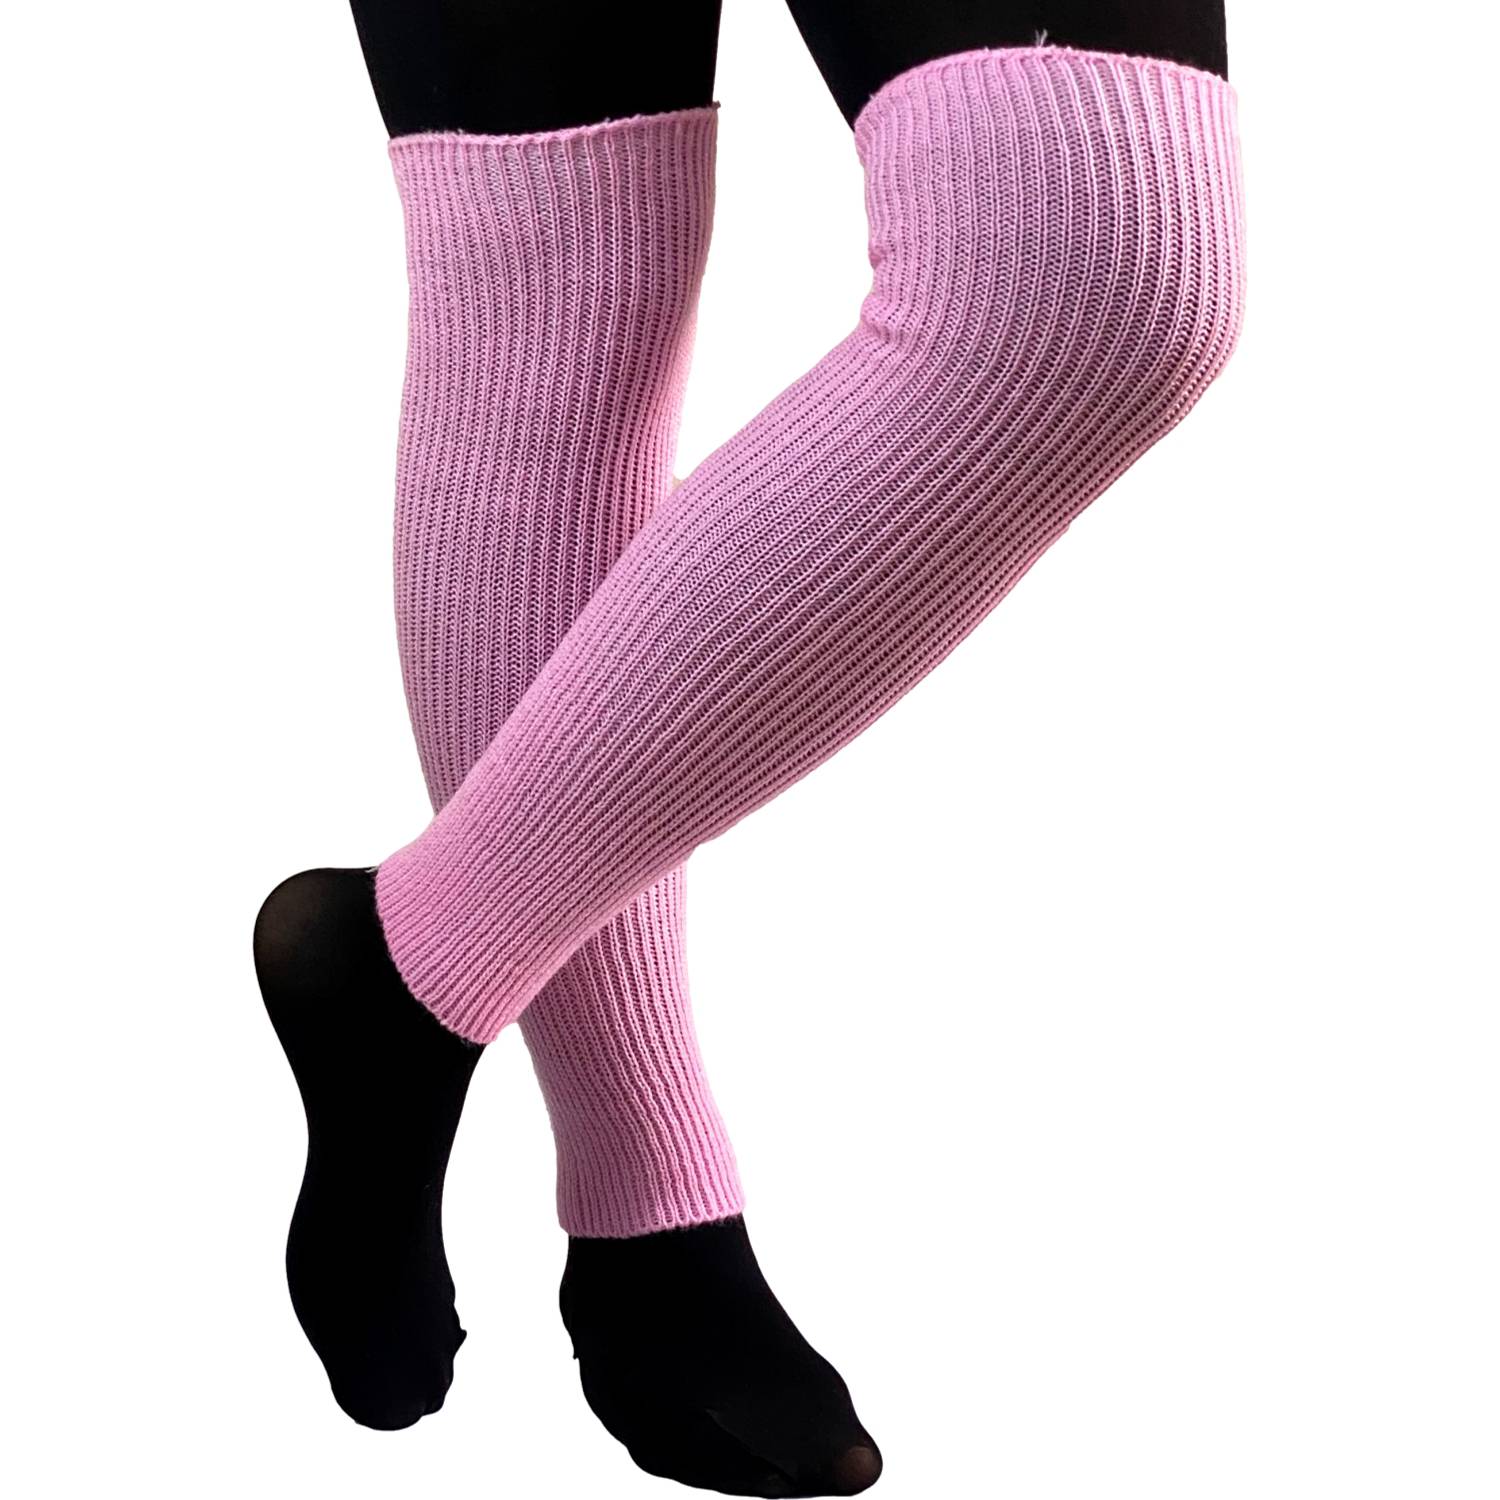 Calentadores de piernas fluorescentes de baile/ballet rosa neón -  calentadores de piernas, Rosado